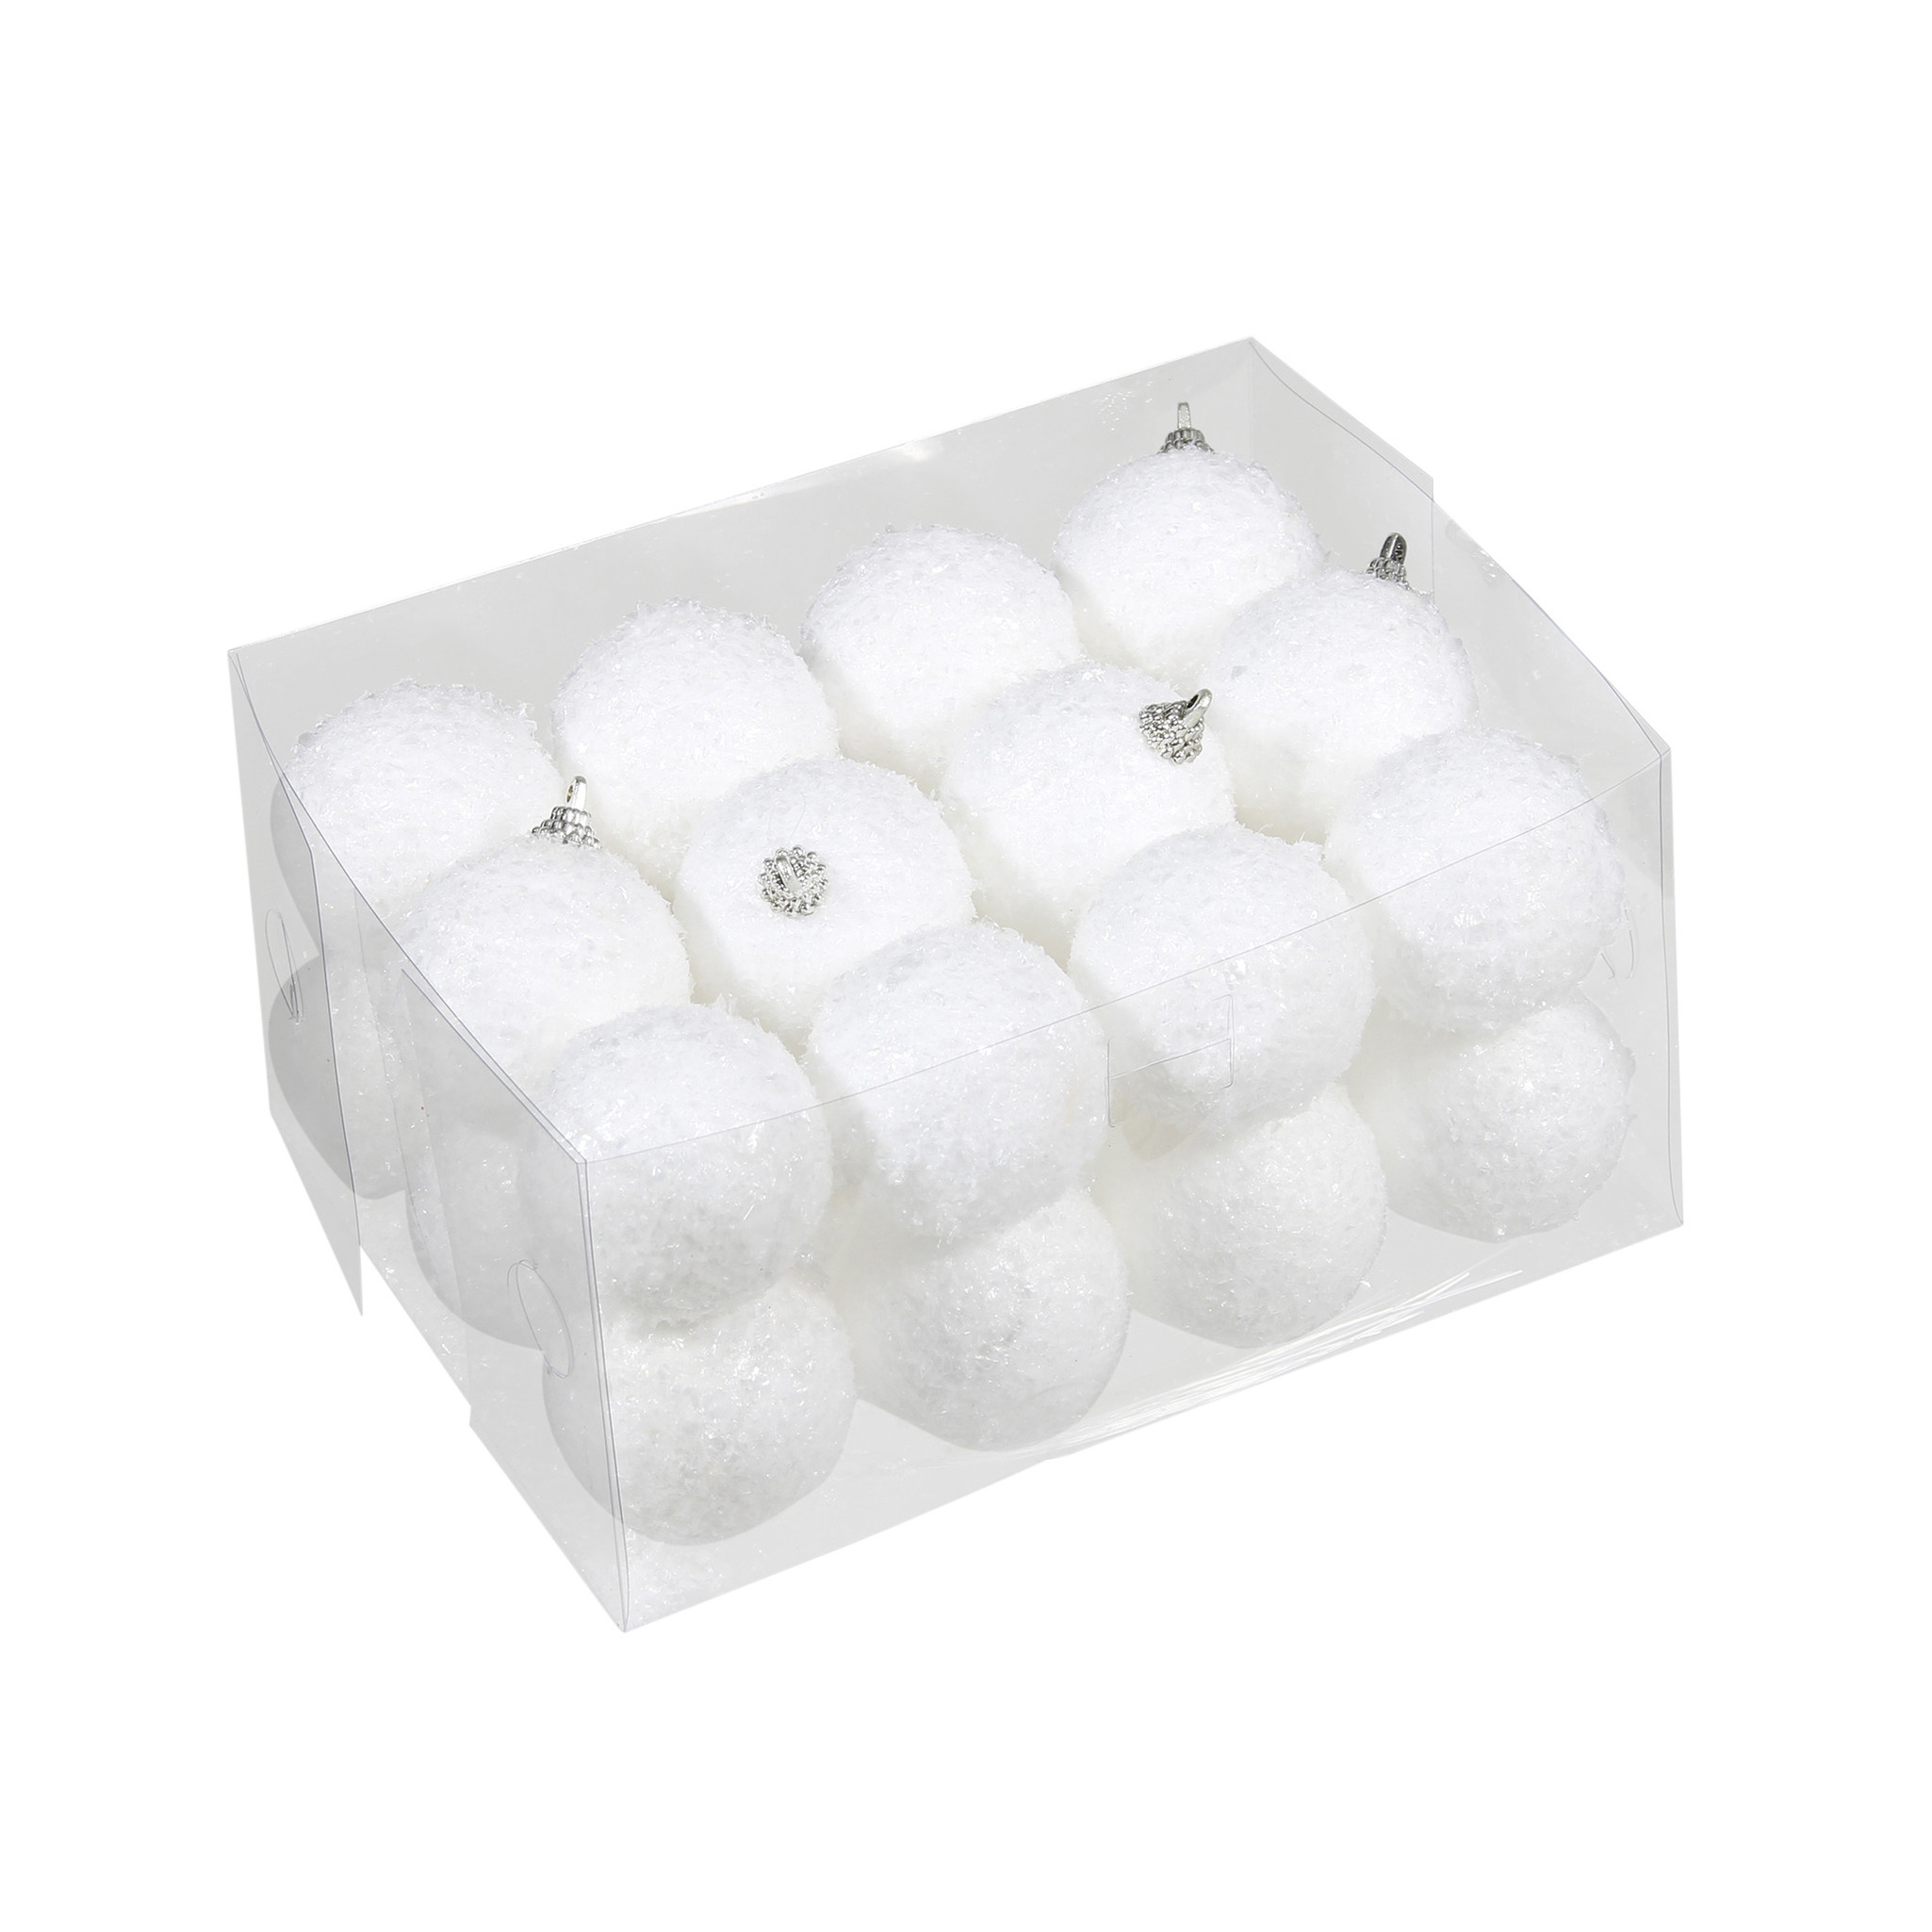 24x Kleine kunststof kerstballen met sneeuw effect wit 5 cm